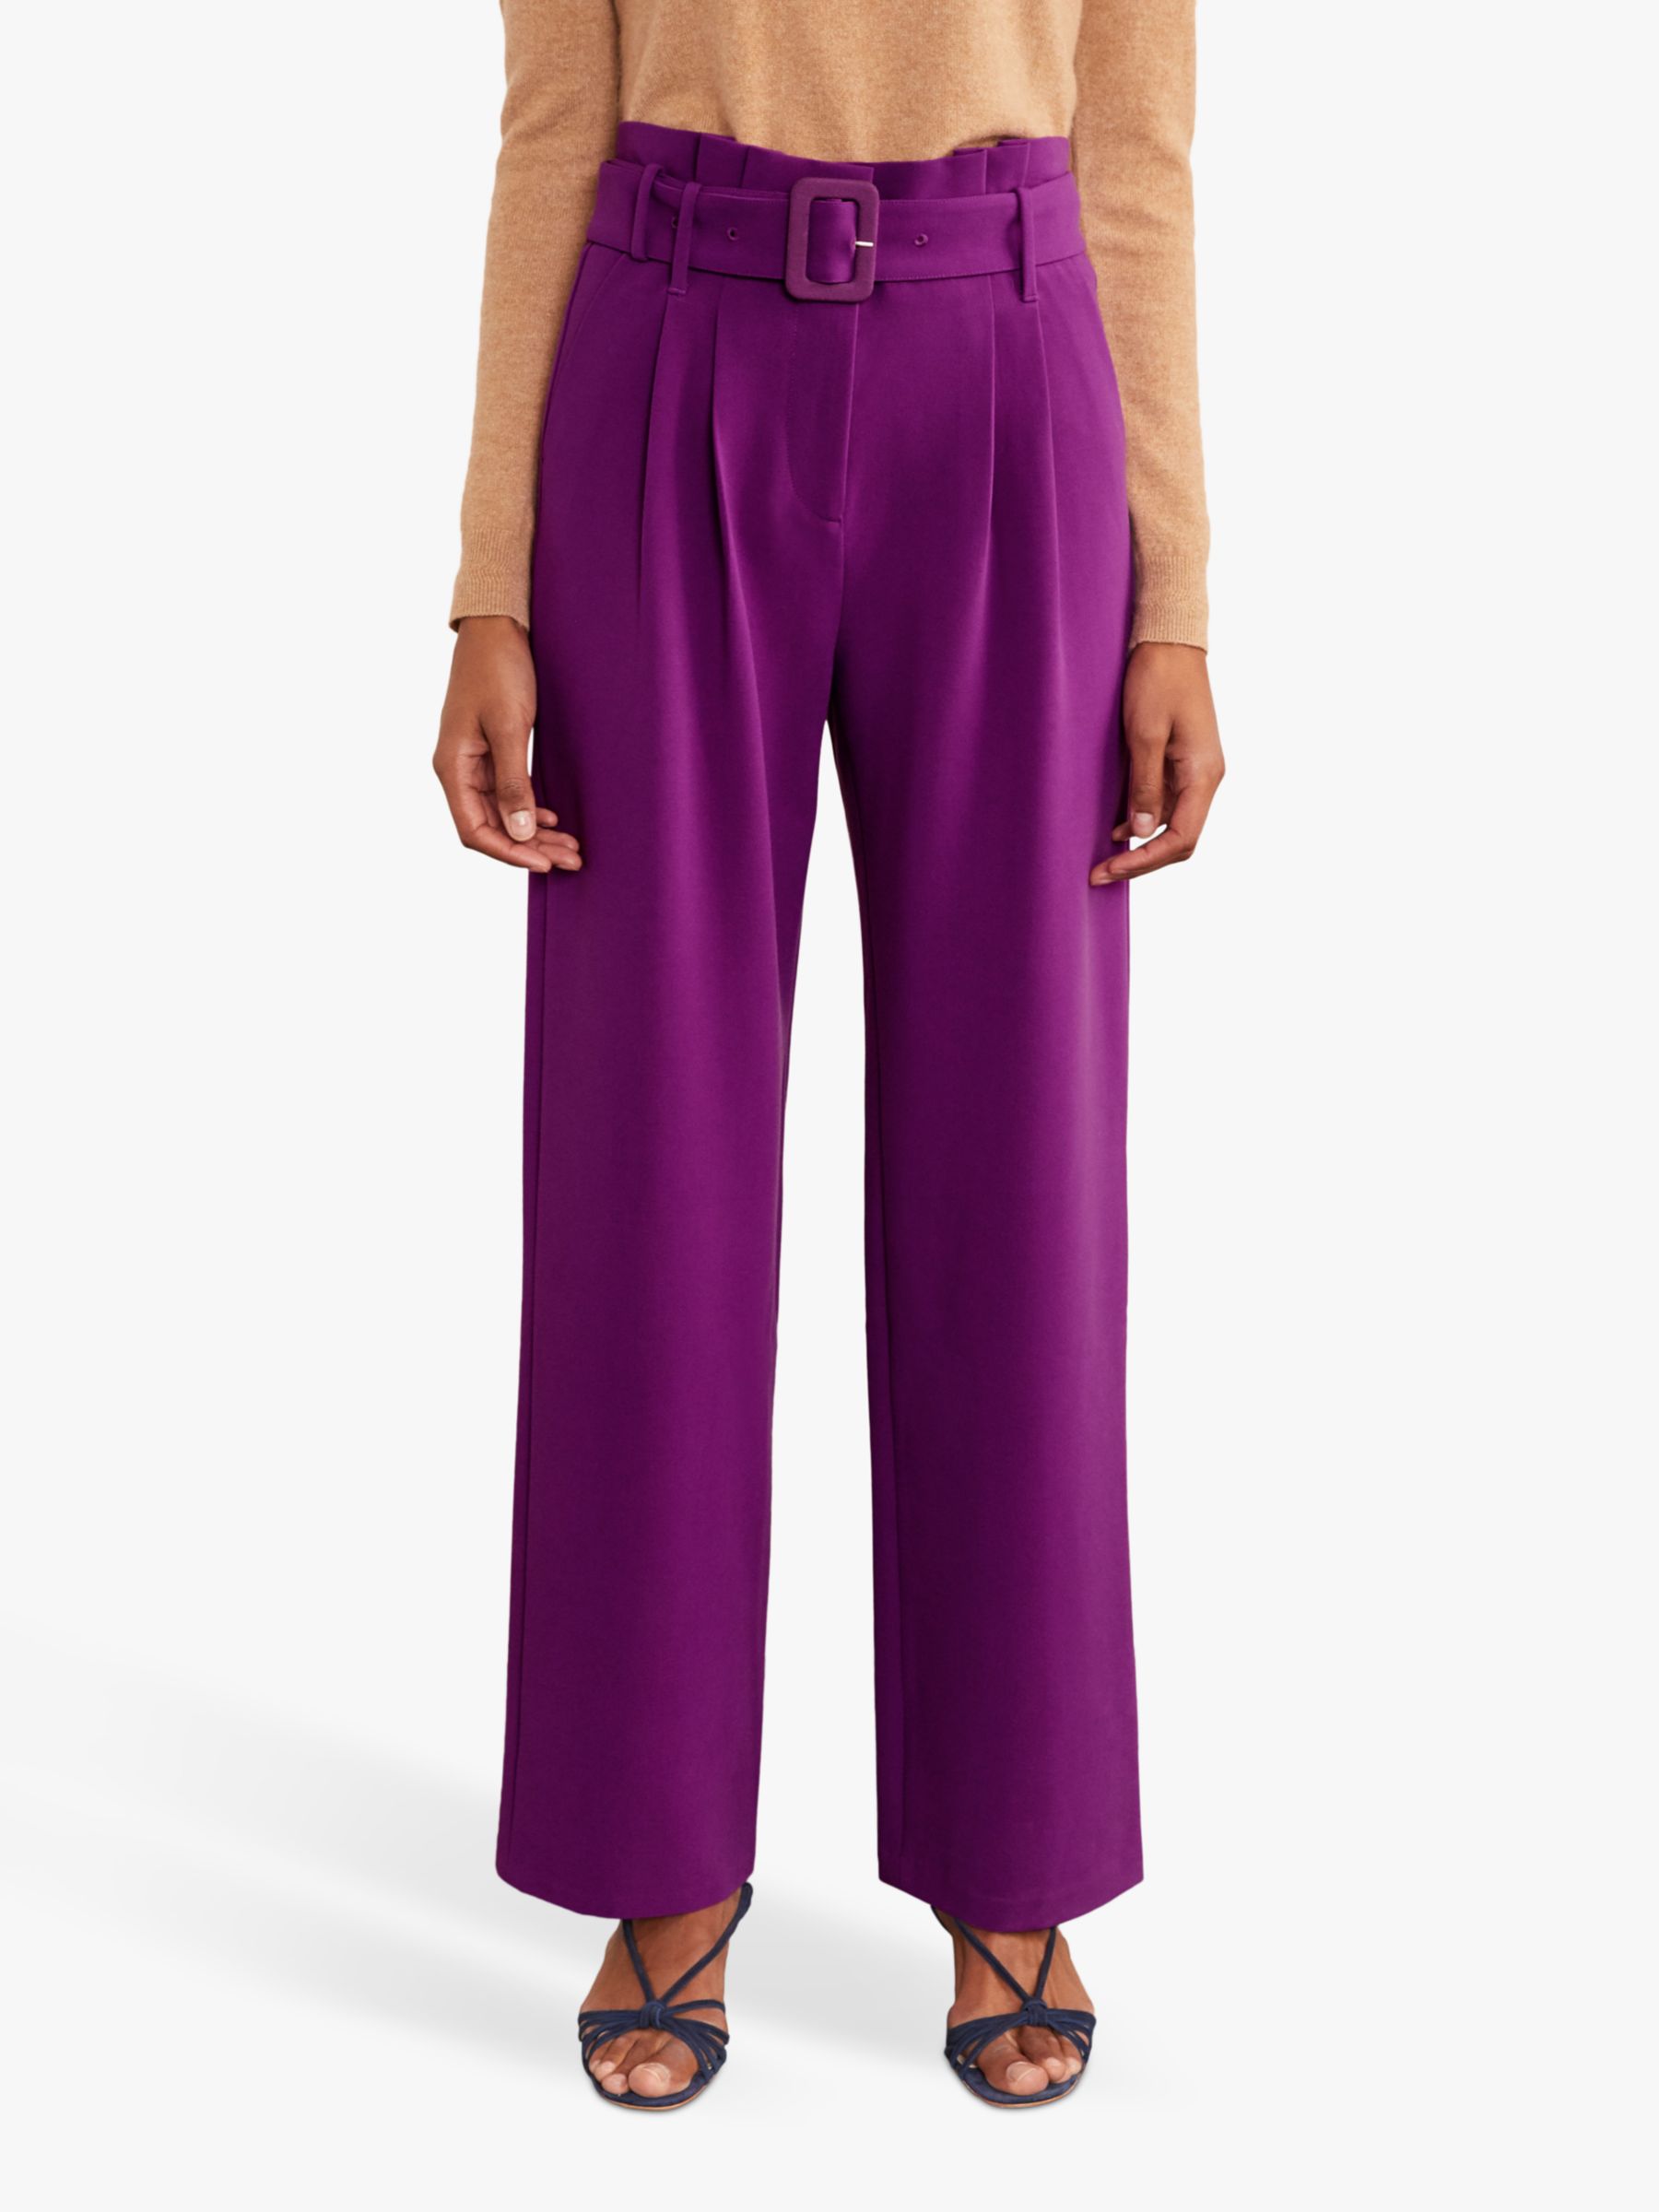 Boden Powis Wide Leg Trousers, Jewel Purple, 8